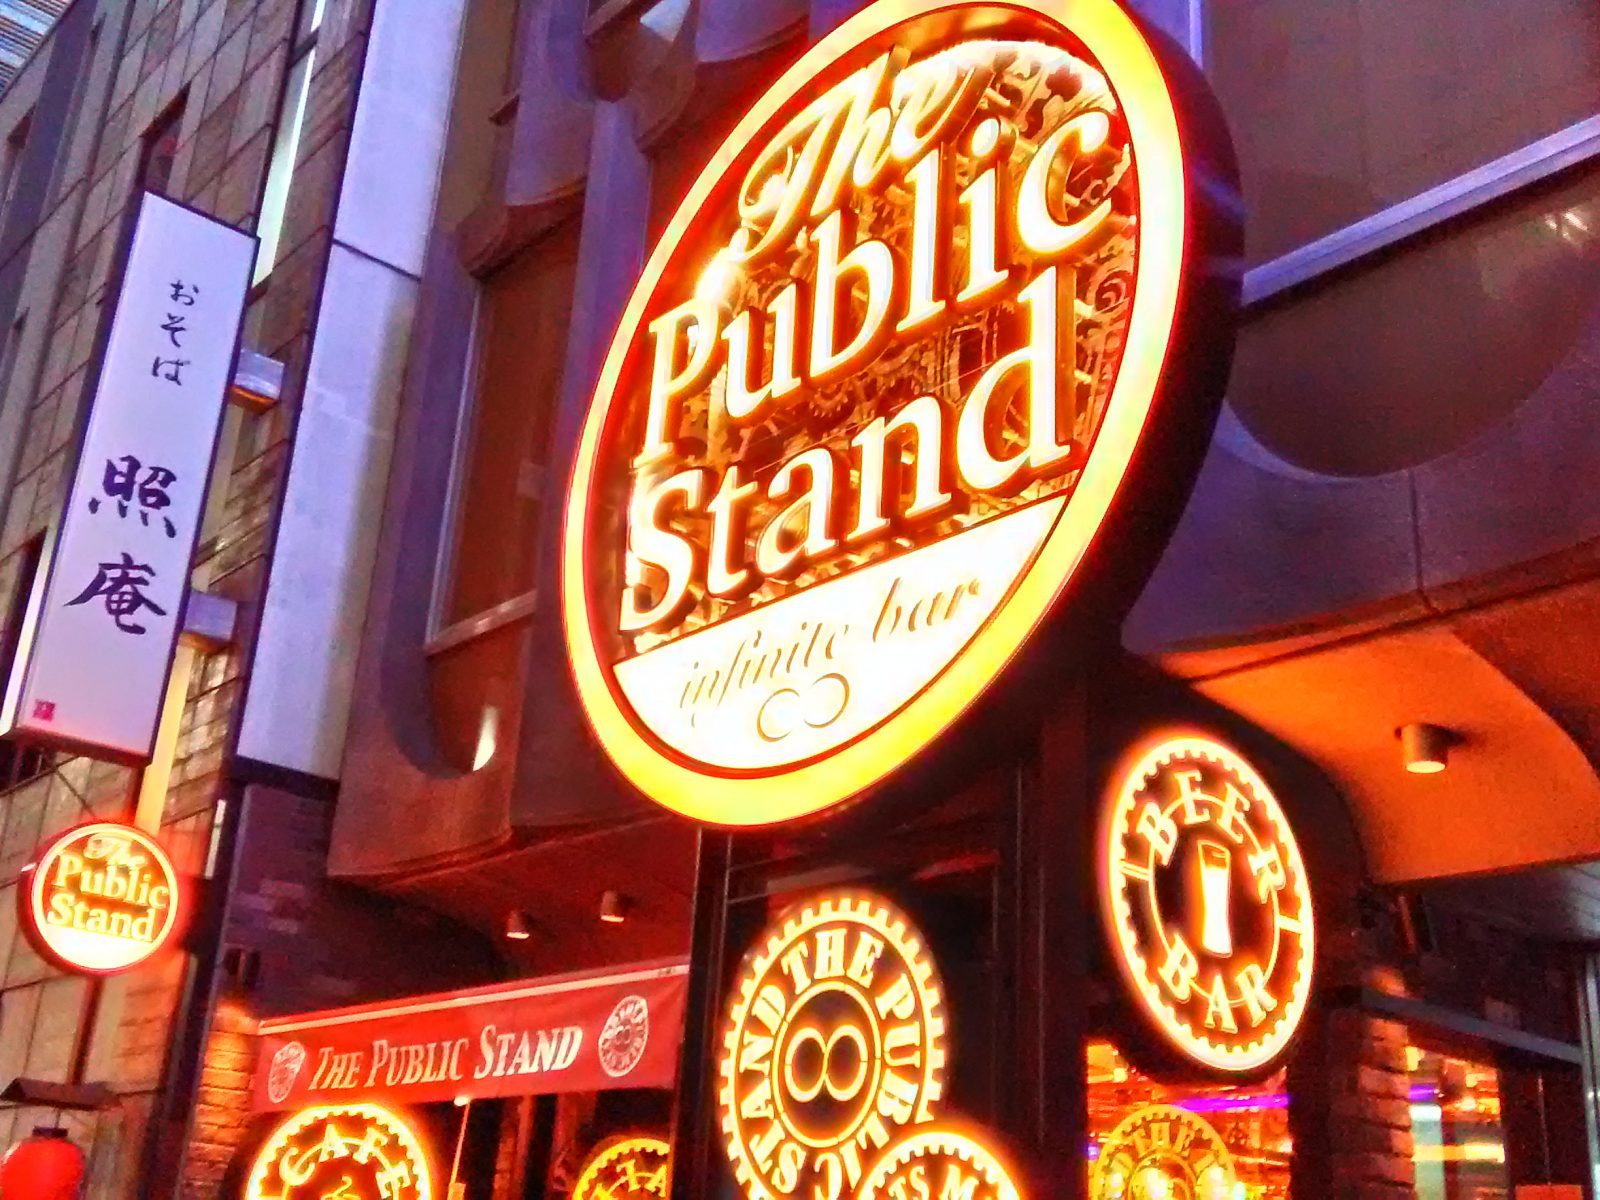 銀座「1000円飲み放題」の新バーが良質なオトナの出会いの場として話題に!